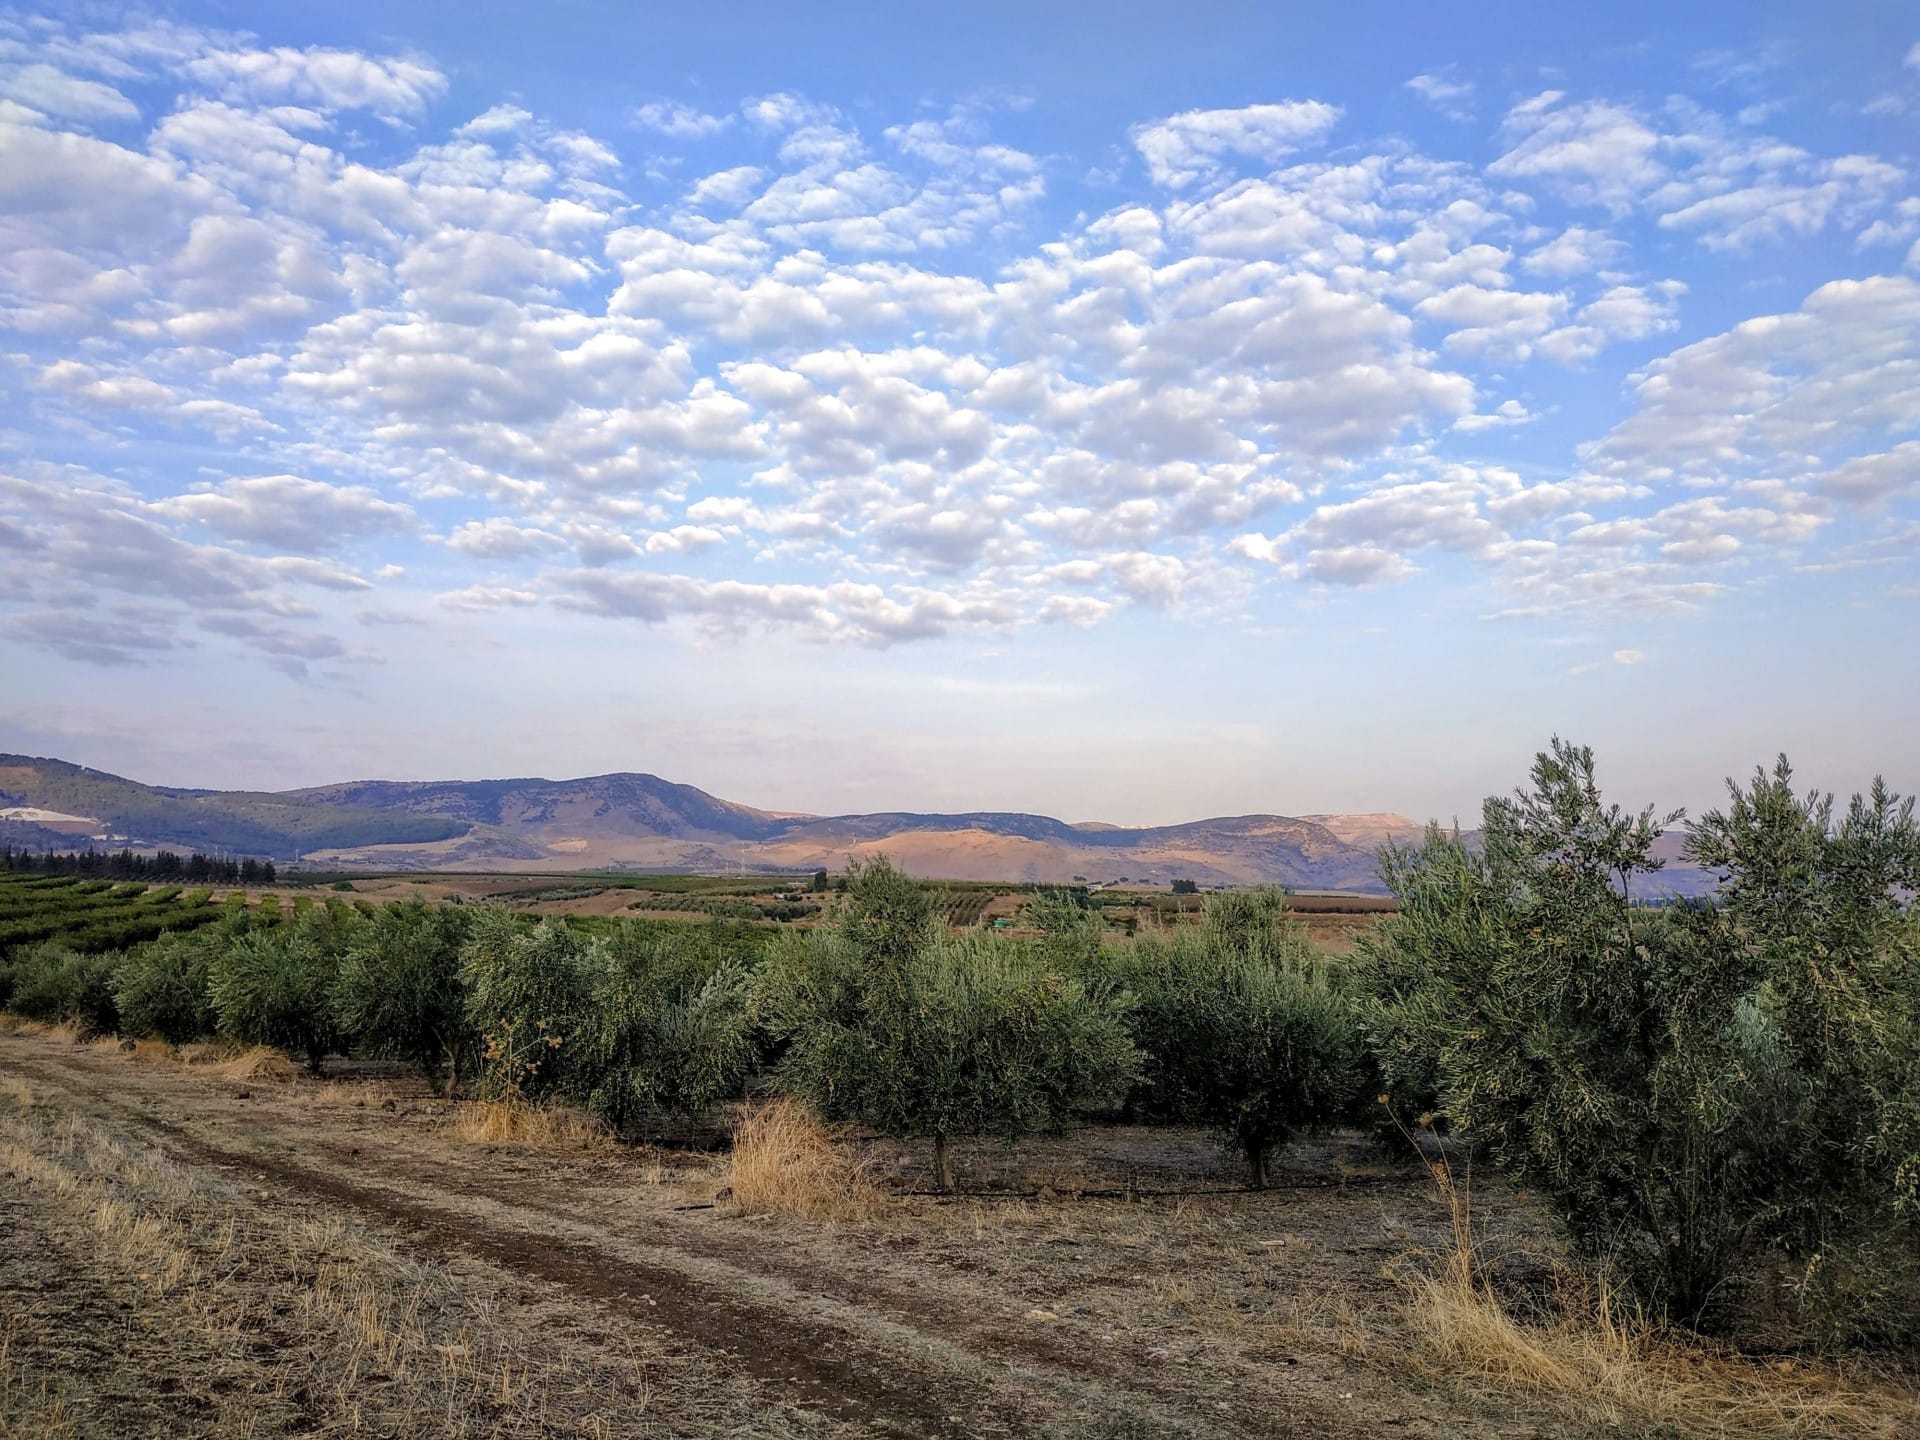 afrika-nahost-profile-die-beste-olivenölproduktion-suche-nach-qualität-hinter-einem-israelischen-produzenten-preisgekrönte-ergebnisse-olivenölzeiten